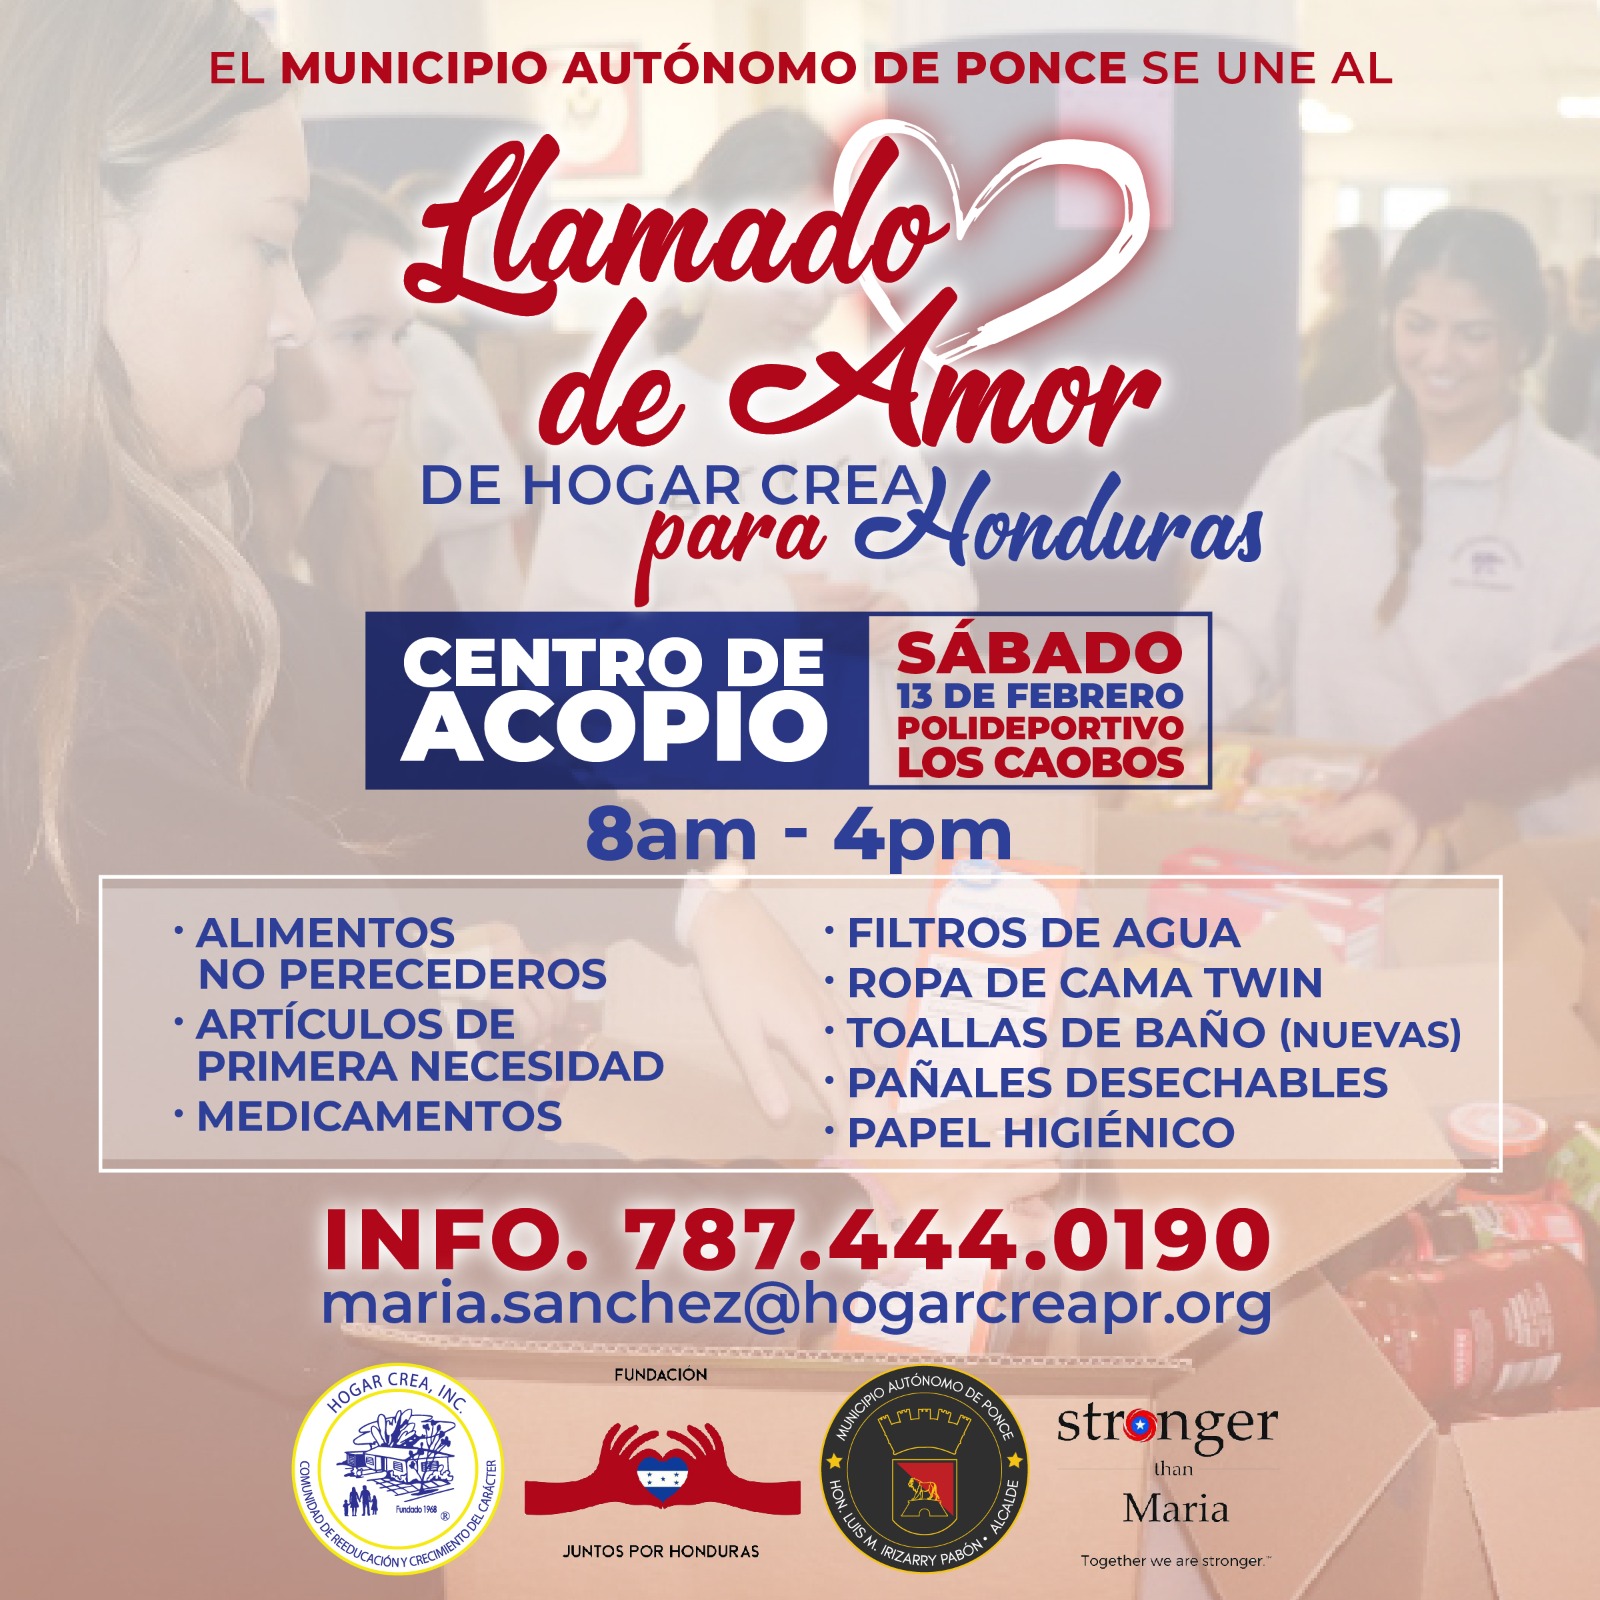 Municipio de Ponce se une al llamado de amor de Hogar Crea